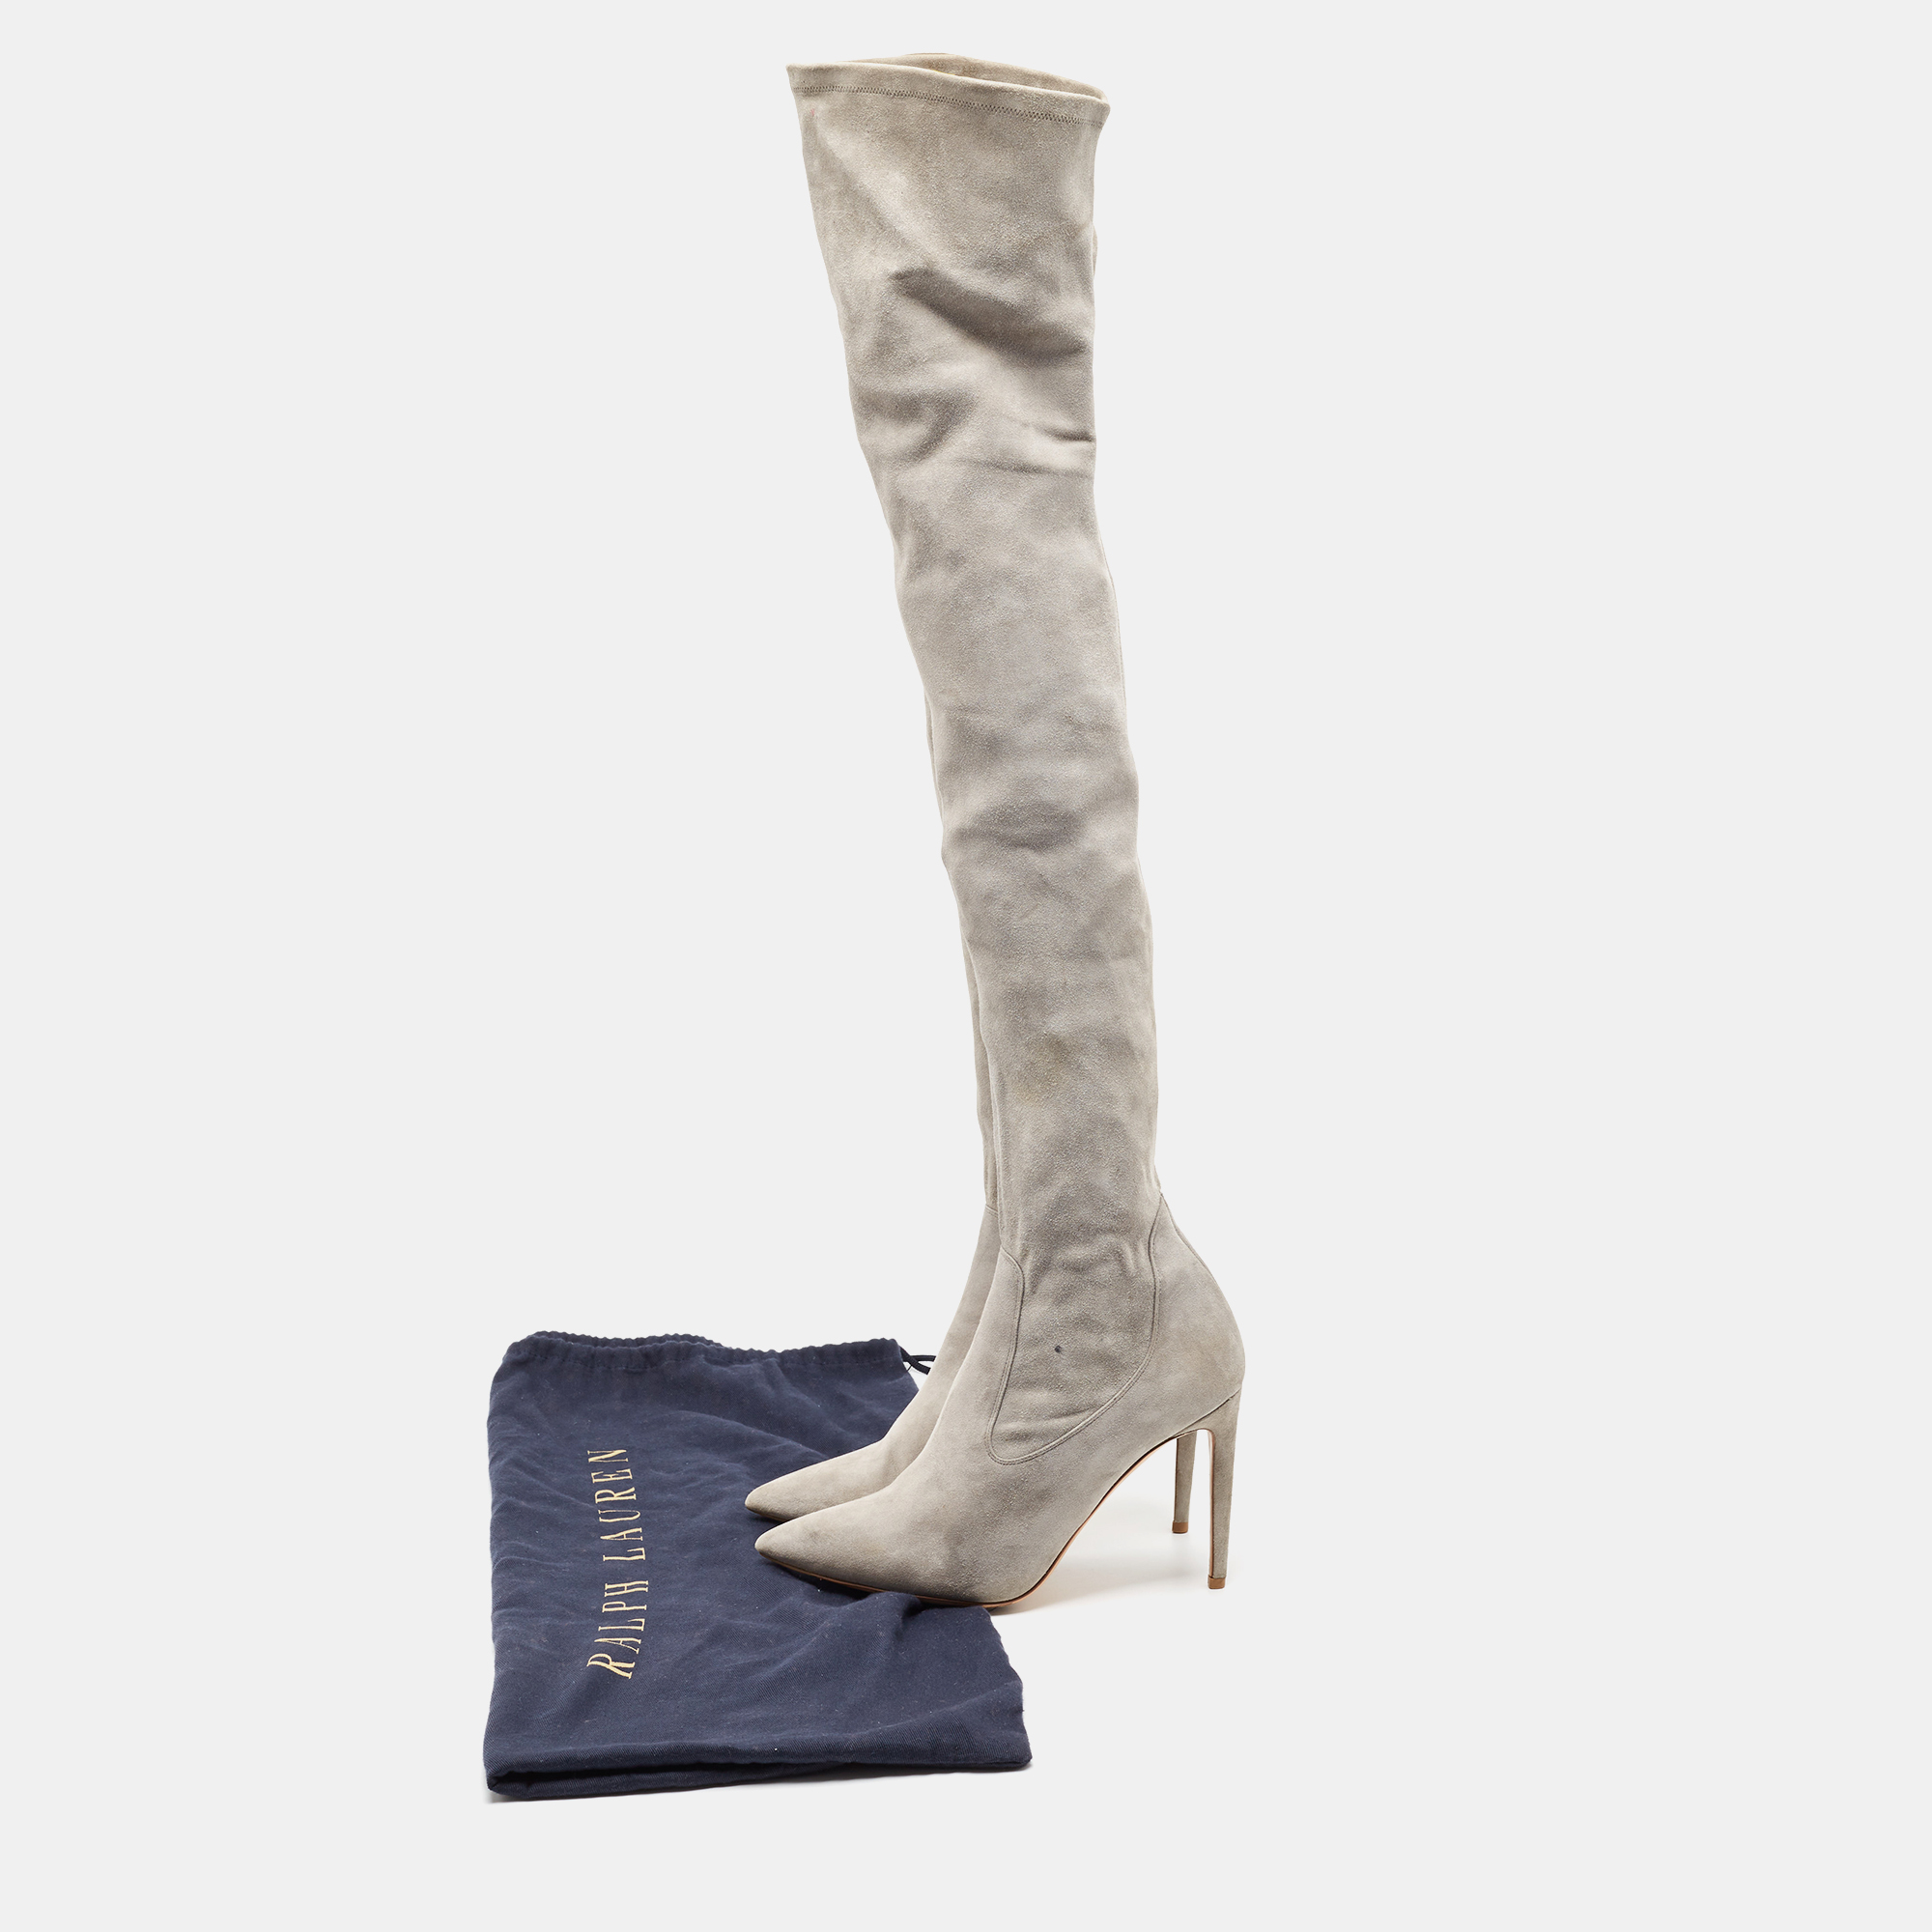 Ralph Lauren Grey Suede Knee Length Boots Size 37.5